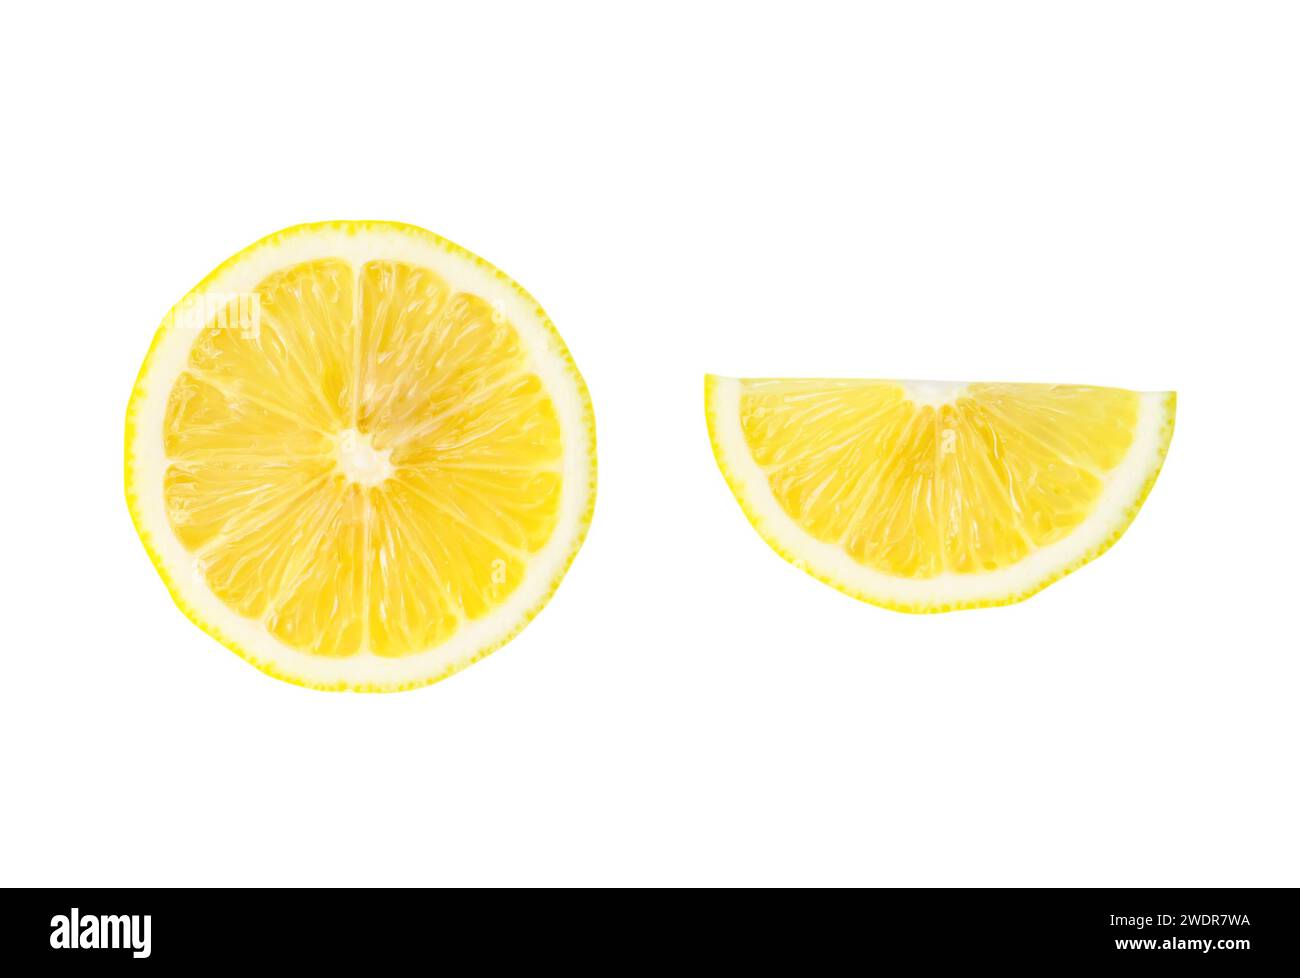 La vista dall'alto della metà e della fetta o del quarto di limone giallo sono isolate su sfondo bianco con percorso di ritaglio. Foto Stock